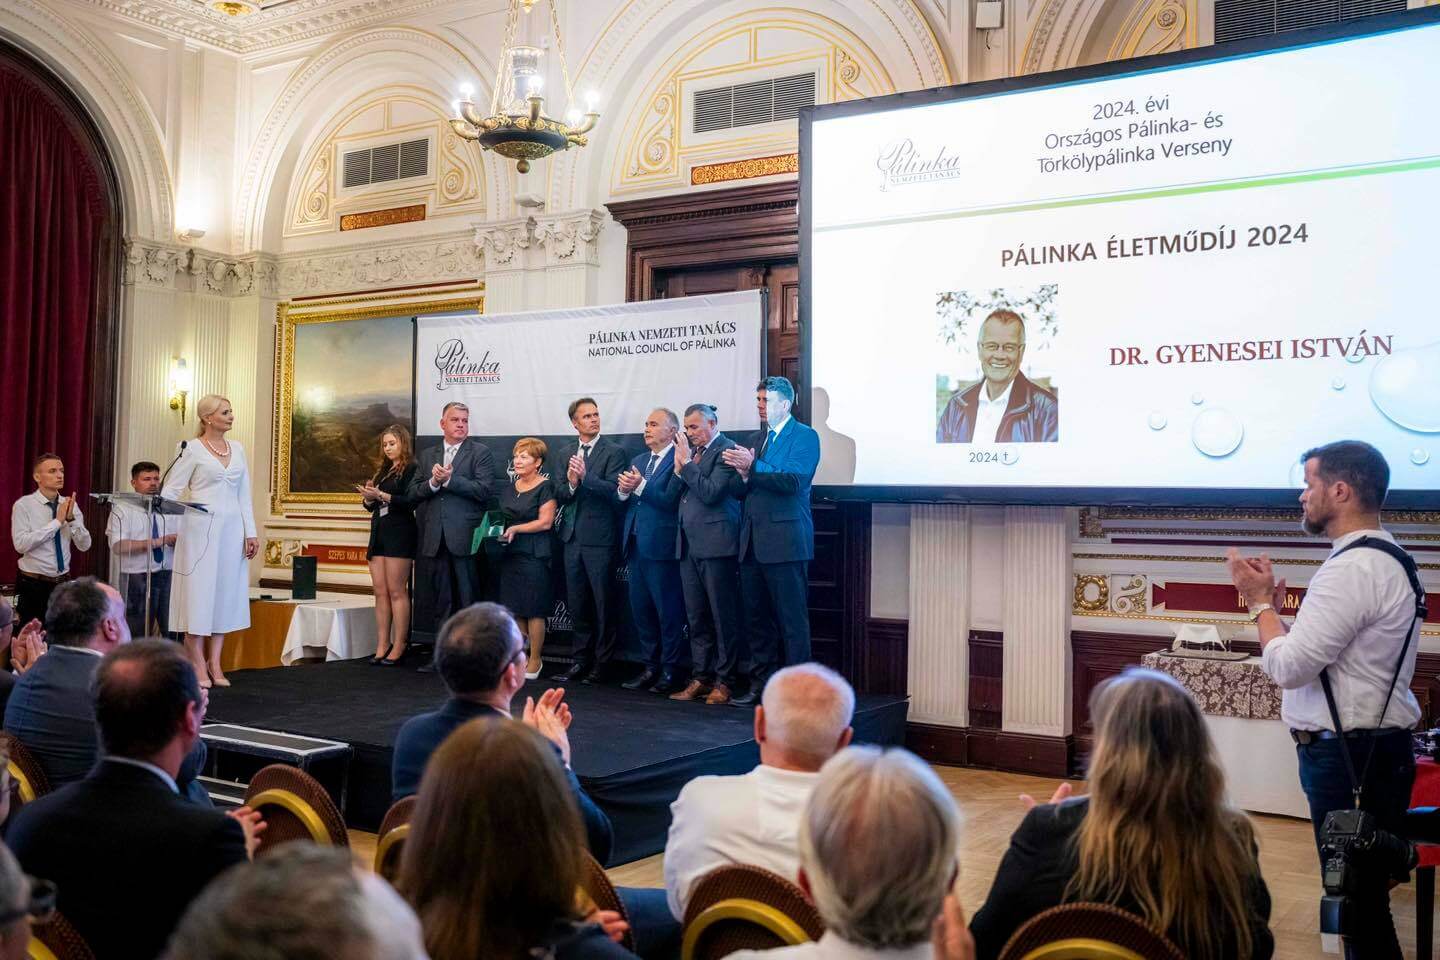 Best Pálinka in Hungary Awarded